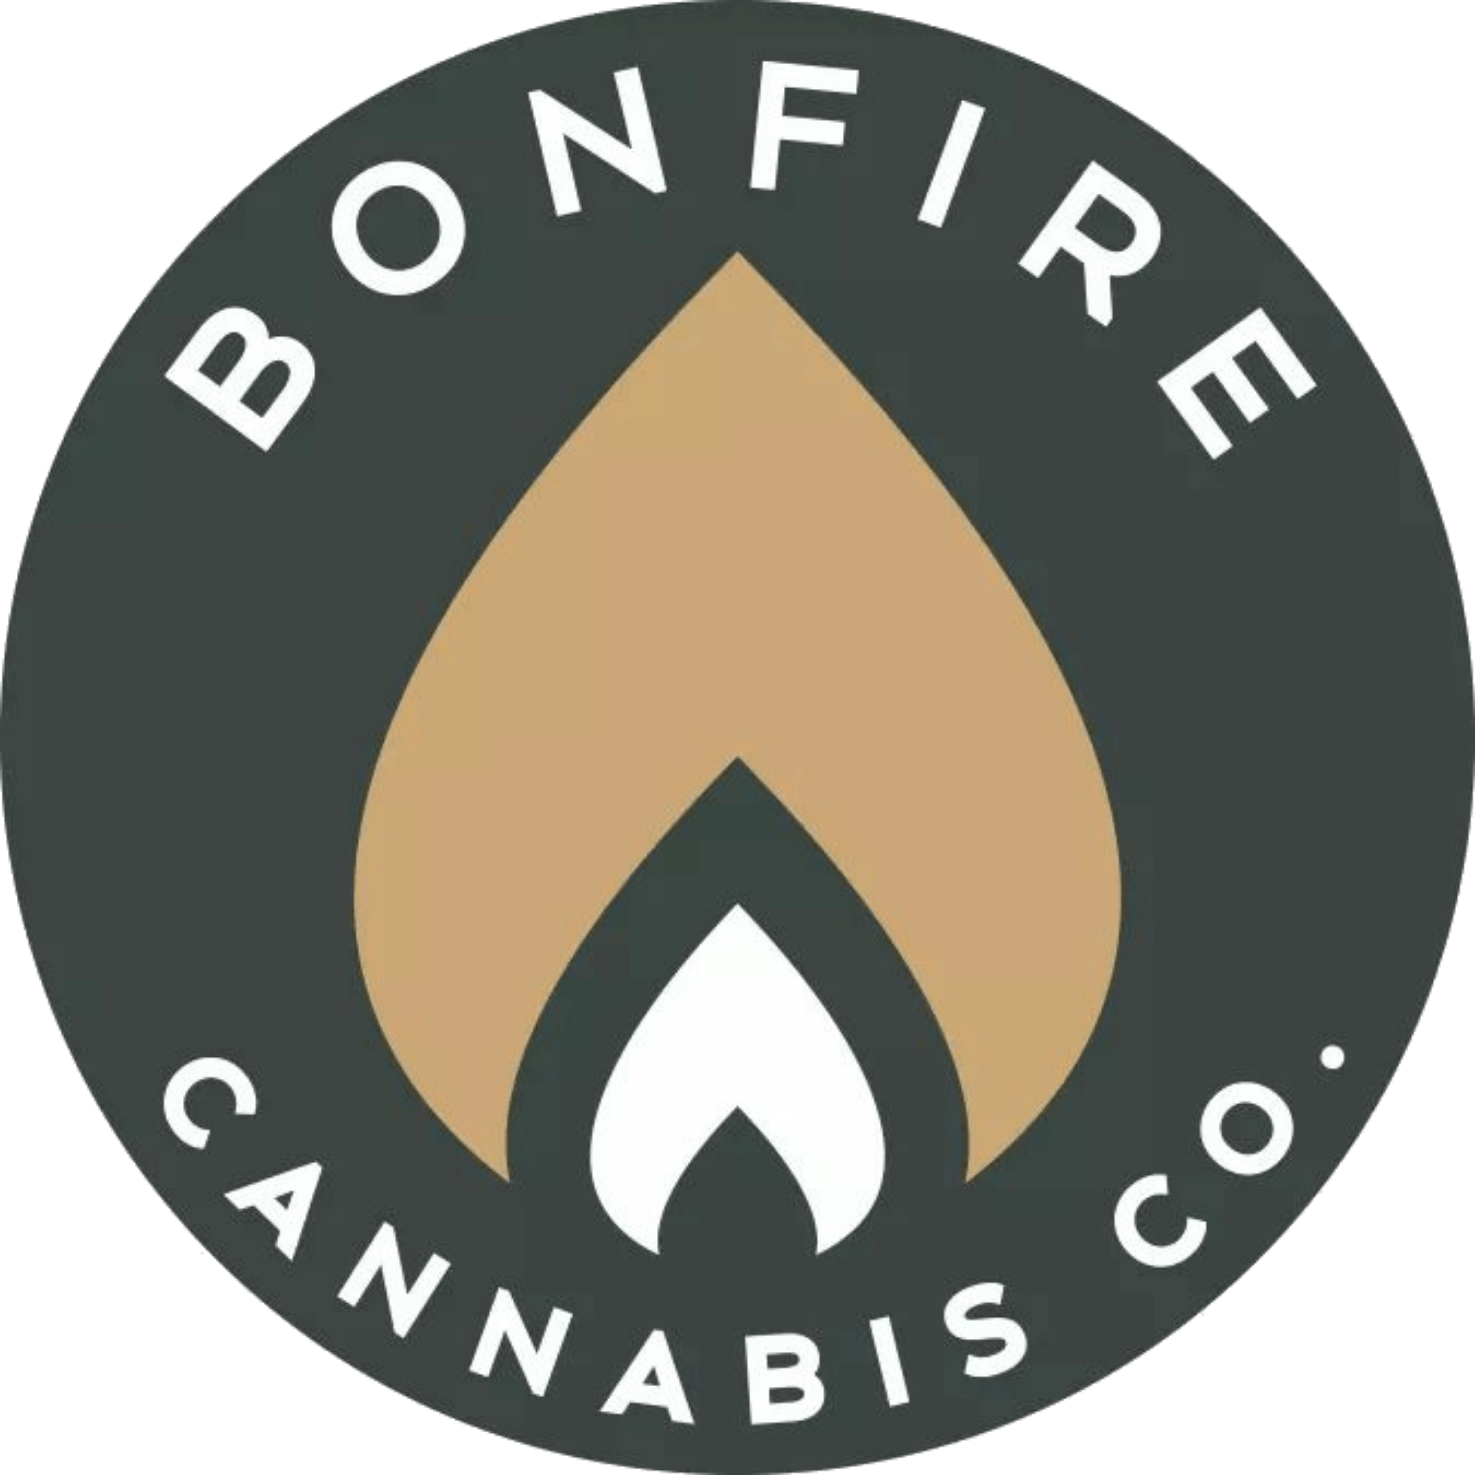 GC Bonfire Firestarter - Church